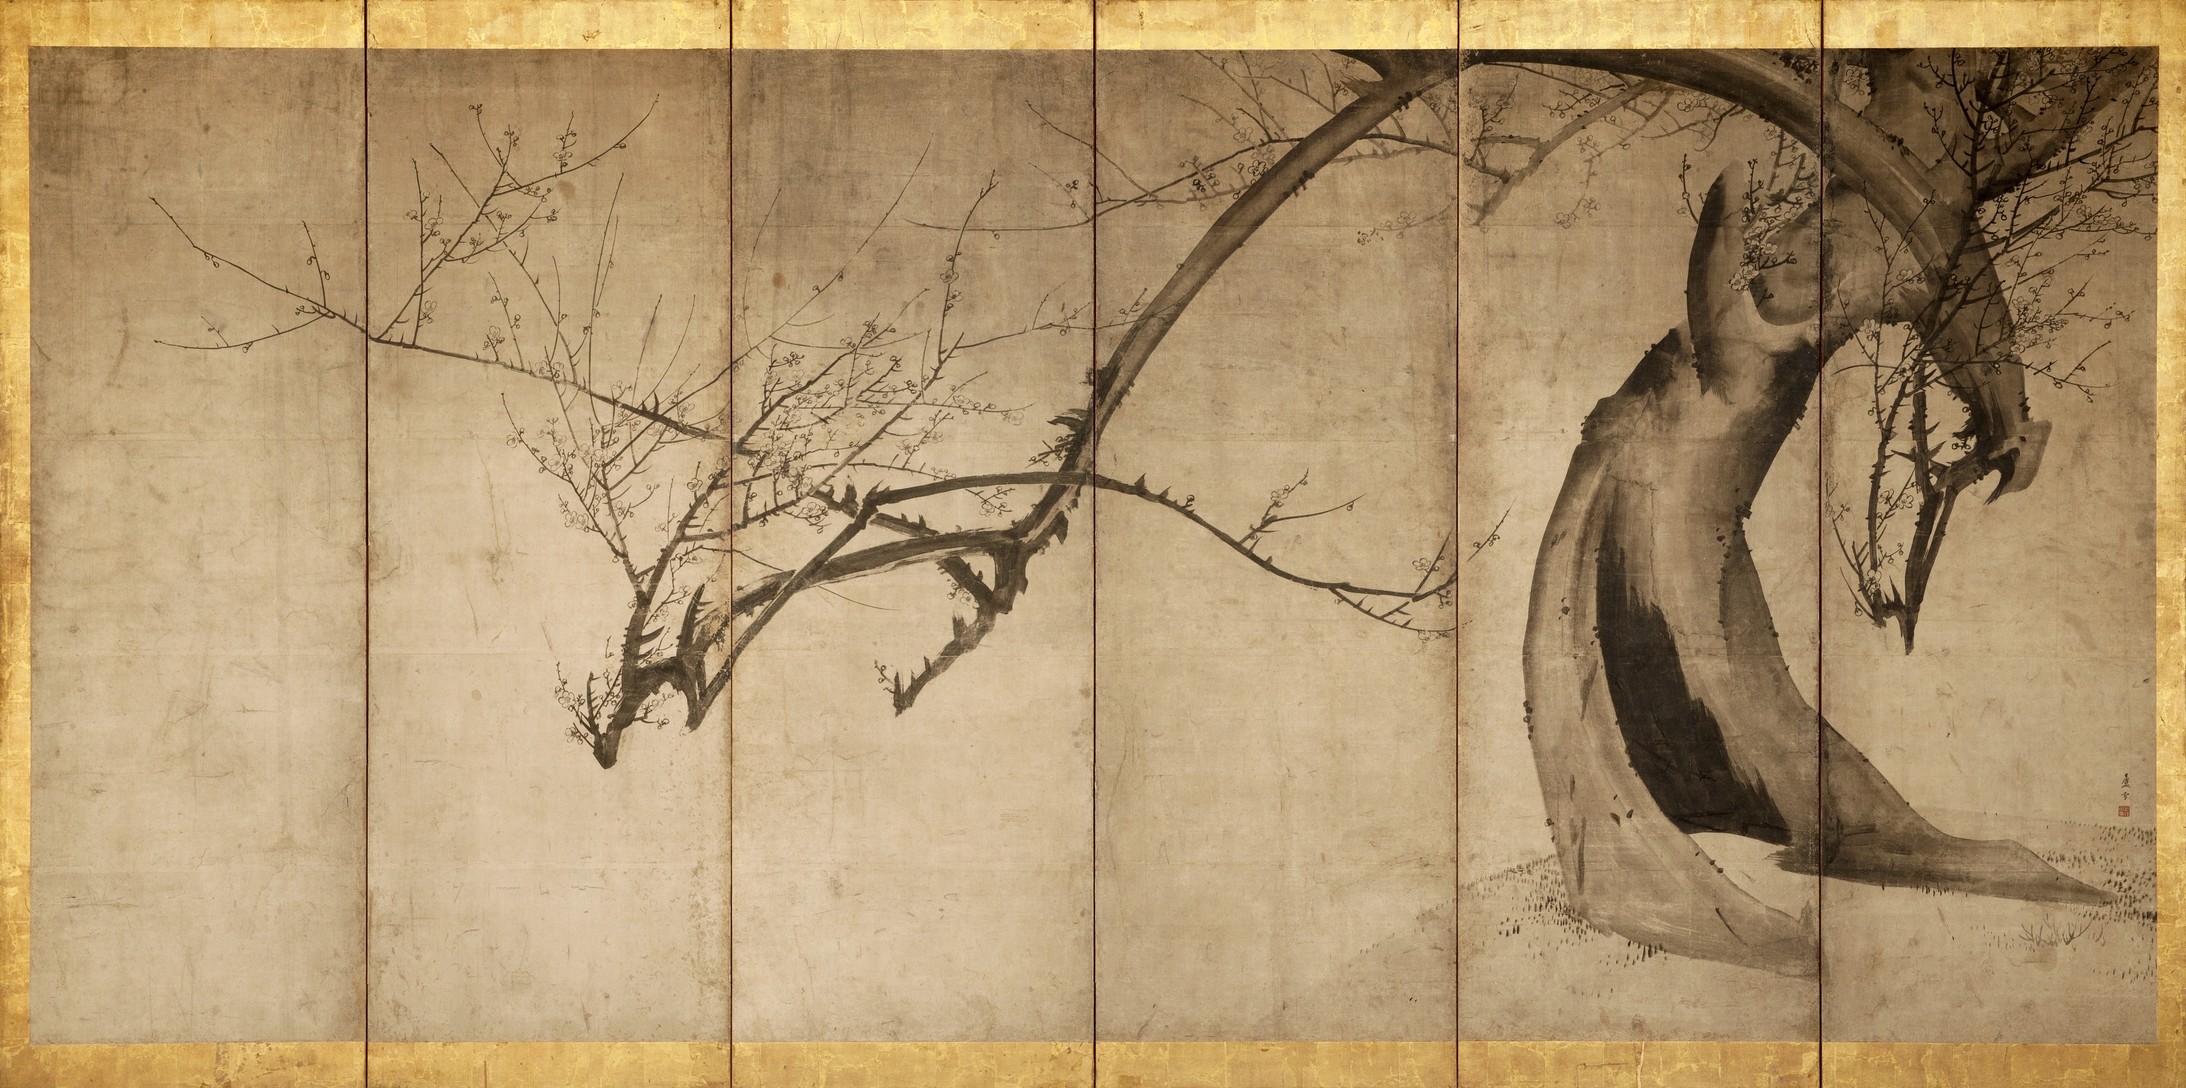 Pflaumenbaum, Nagasawa Rosetsu (1754-1799), Detail aus einem Stellschirm, bestehend aus 6 Paneelen; Tusche auf Papier
Private Sammlung, New York © Museum Rietberg